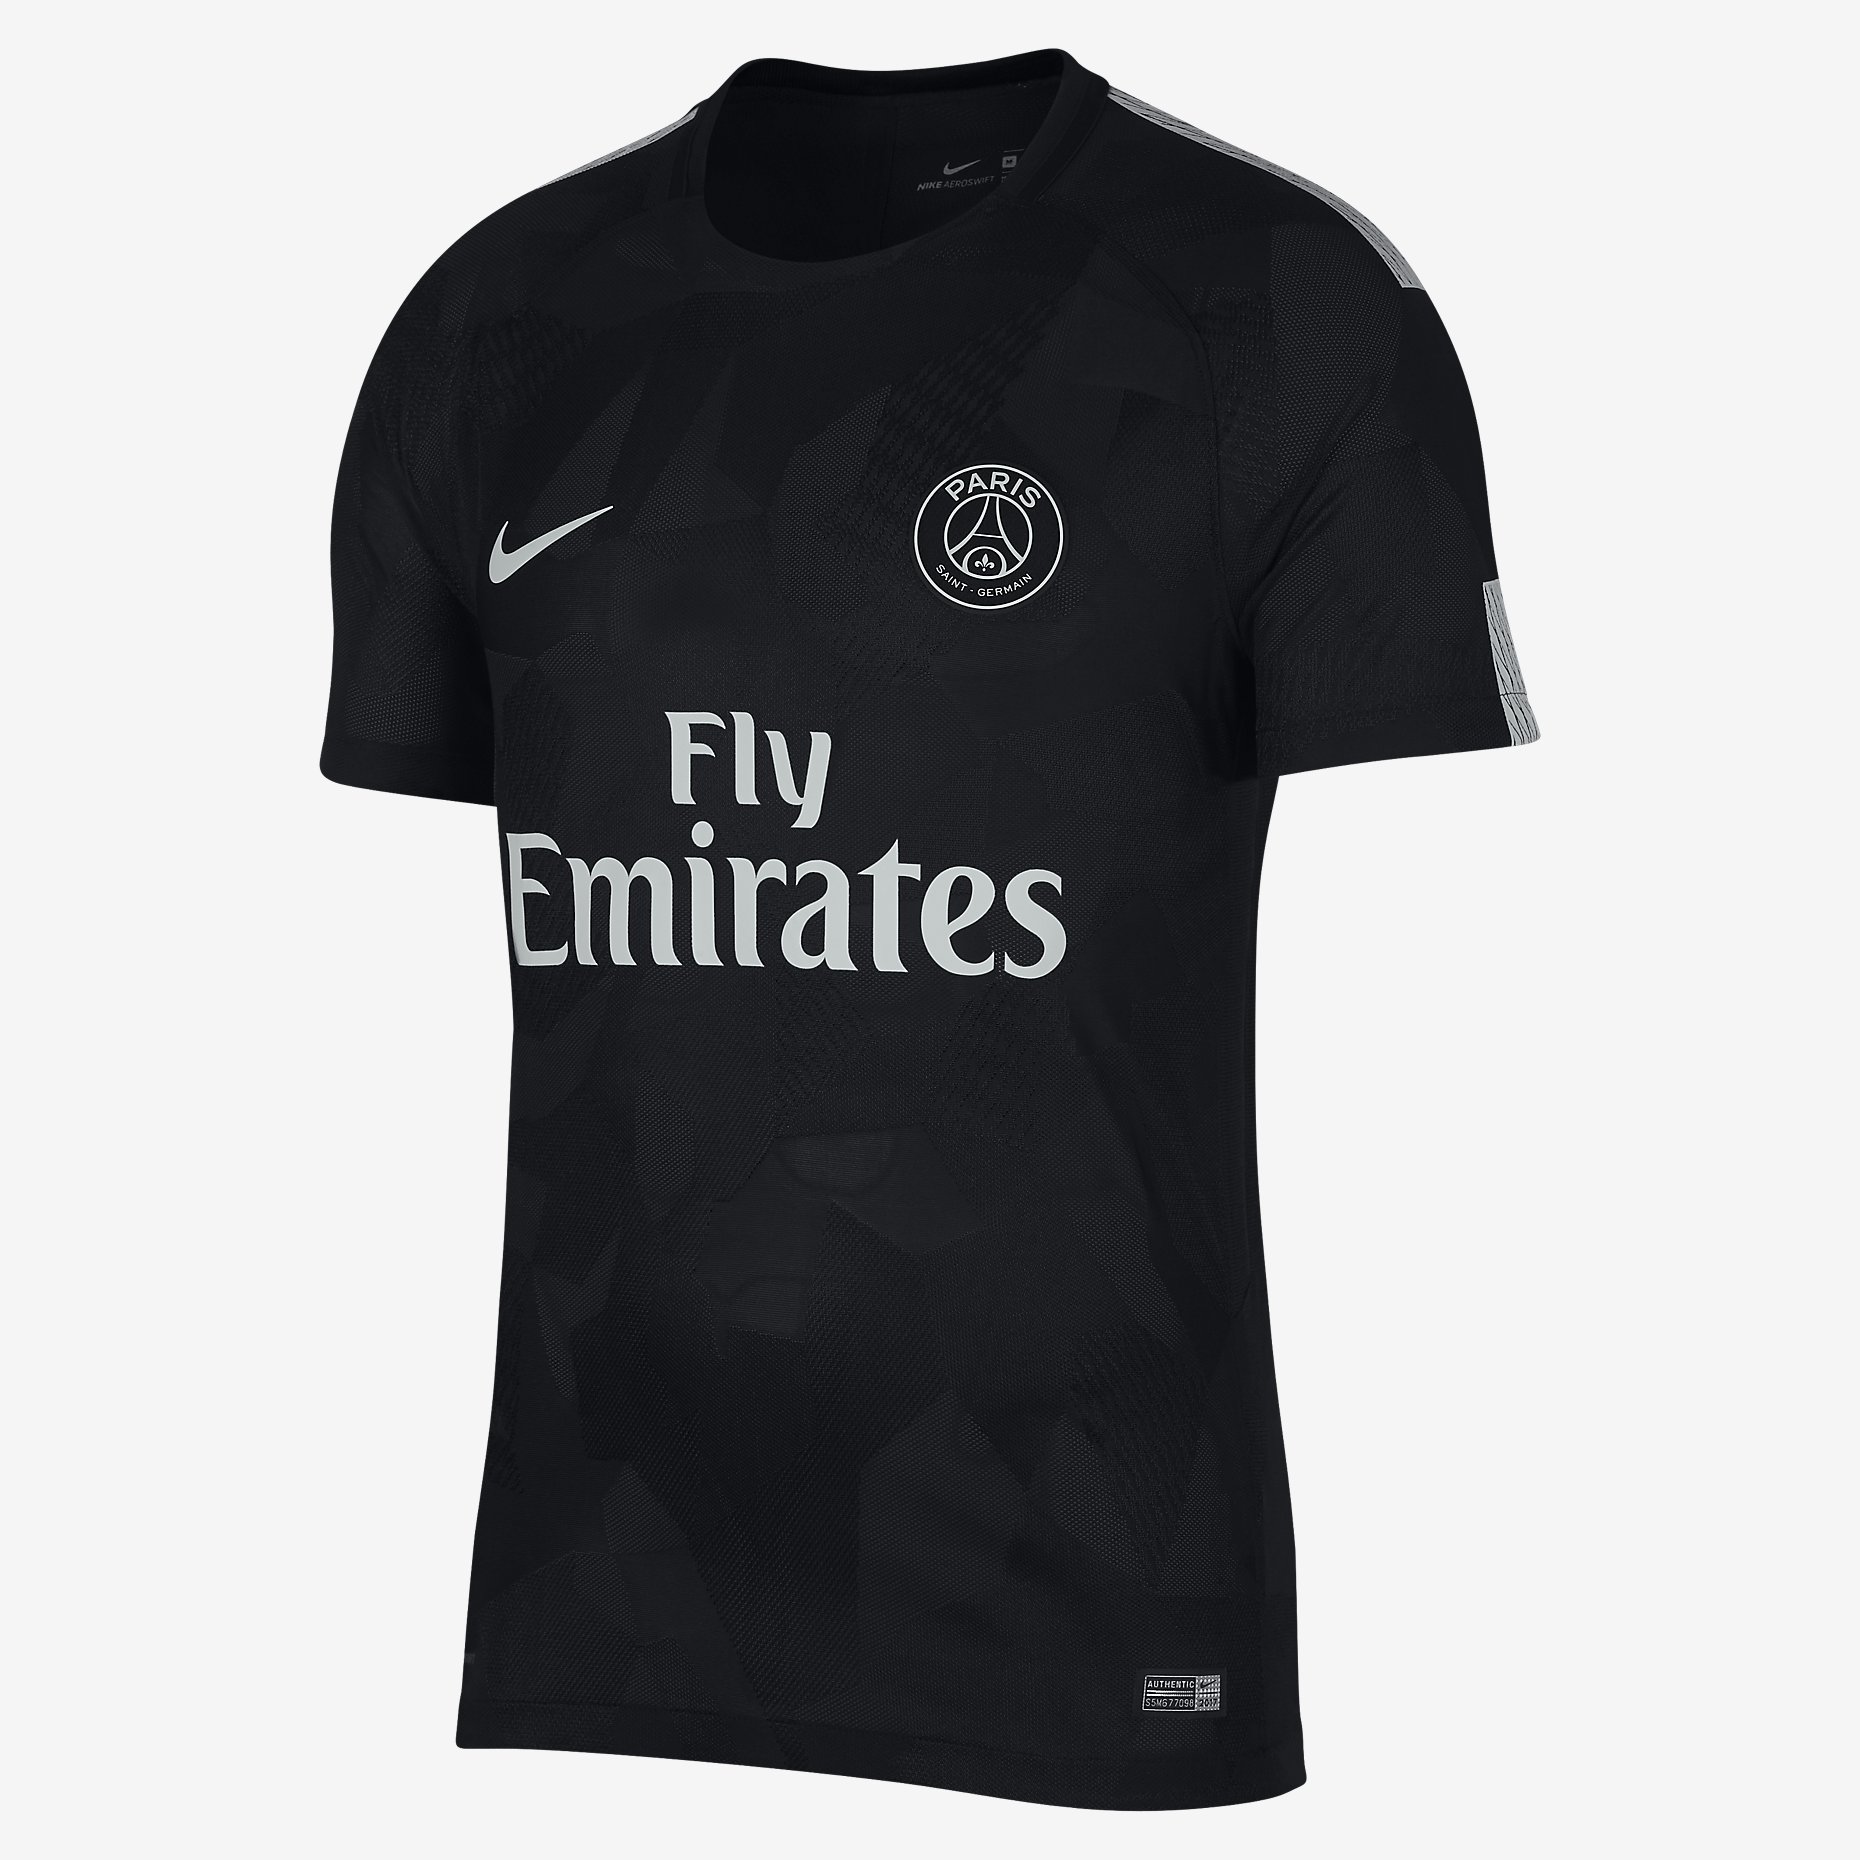 Paris Saint-Germain 17/18 Nike Third Kit | 17/18 Kits | Football shirt blog